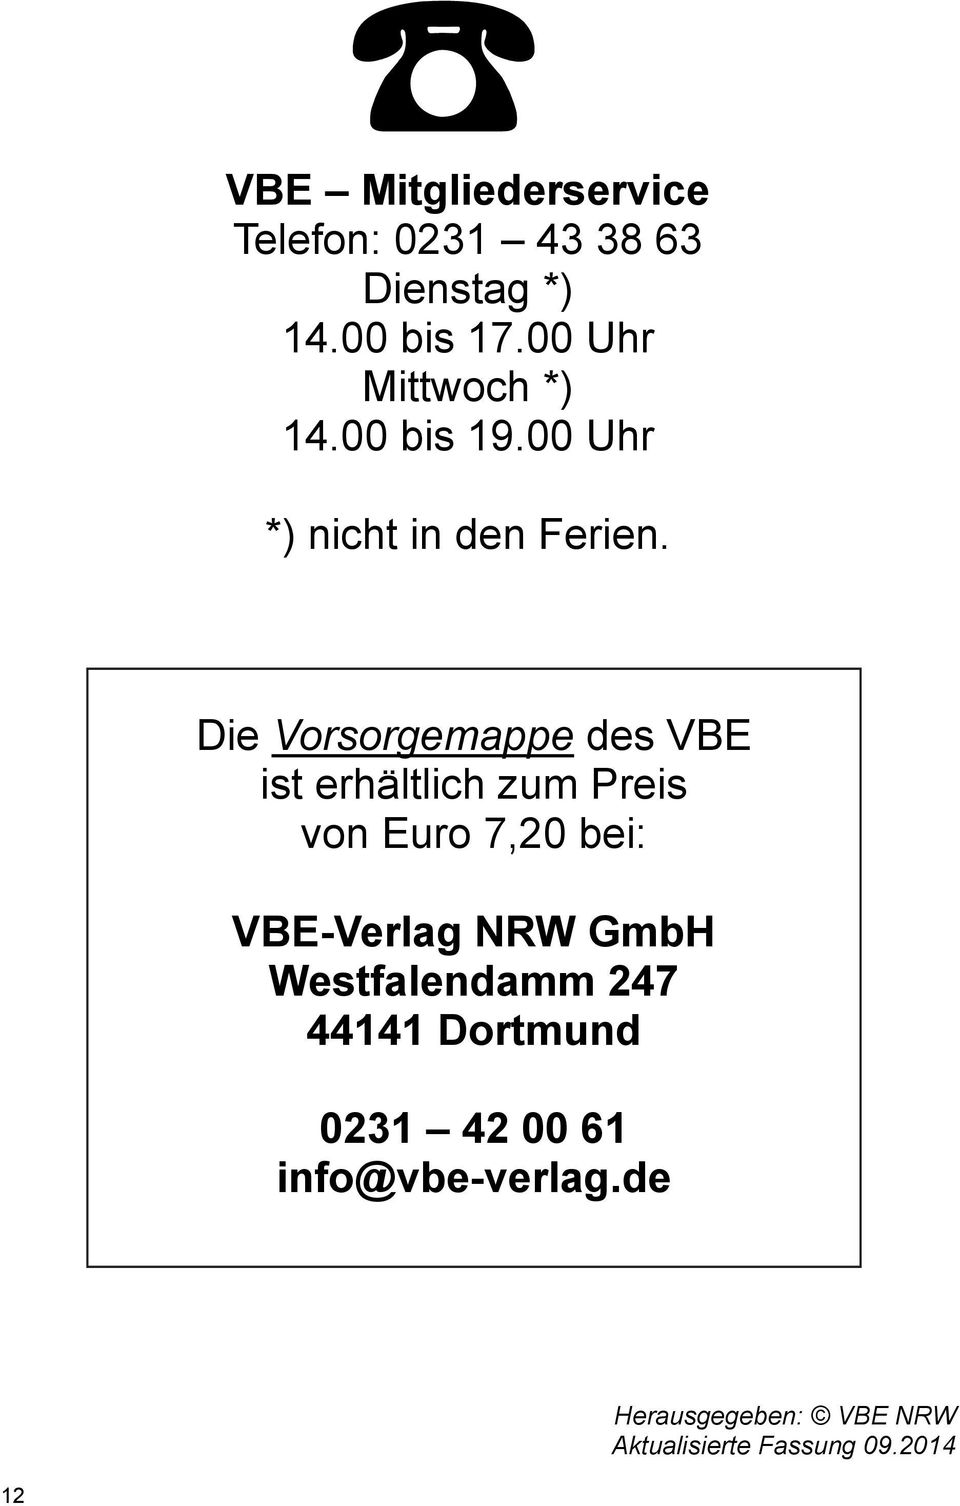 Die Vorsorgemappe des VBE ist erhältlich zum Preis von Euro 7,20 bei: VBE-Verlag NRW